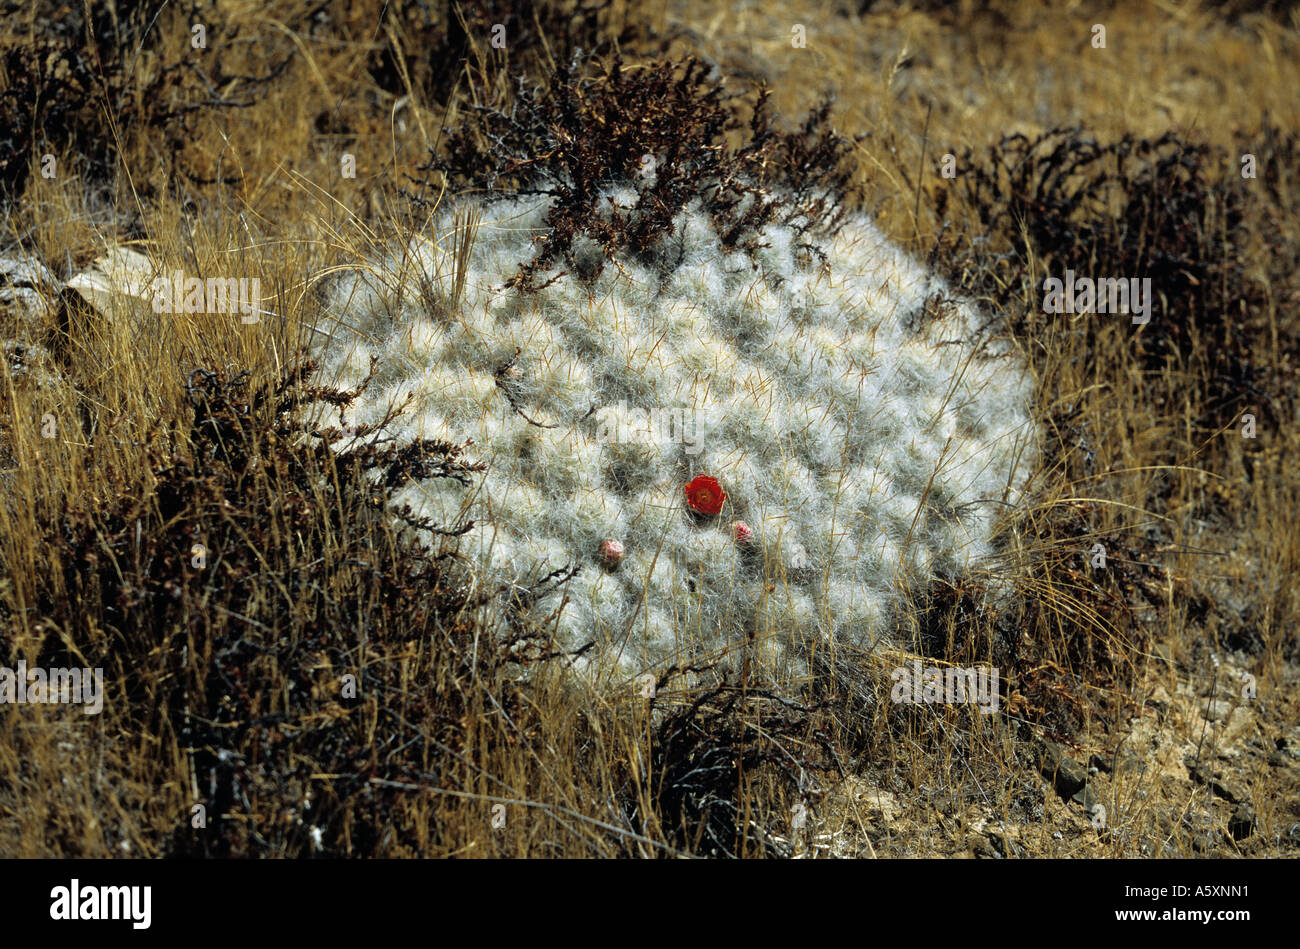 A blooming cactus on the site of Winchus (Peru). Cactus en fleur sur le site de Winchus (Pérou). Stock Photo